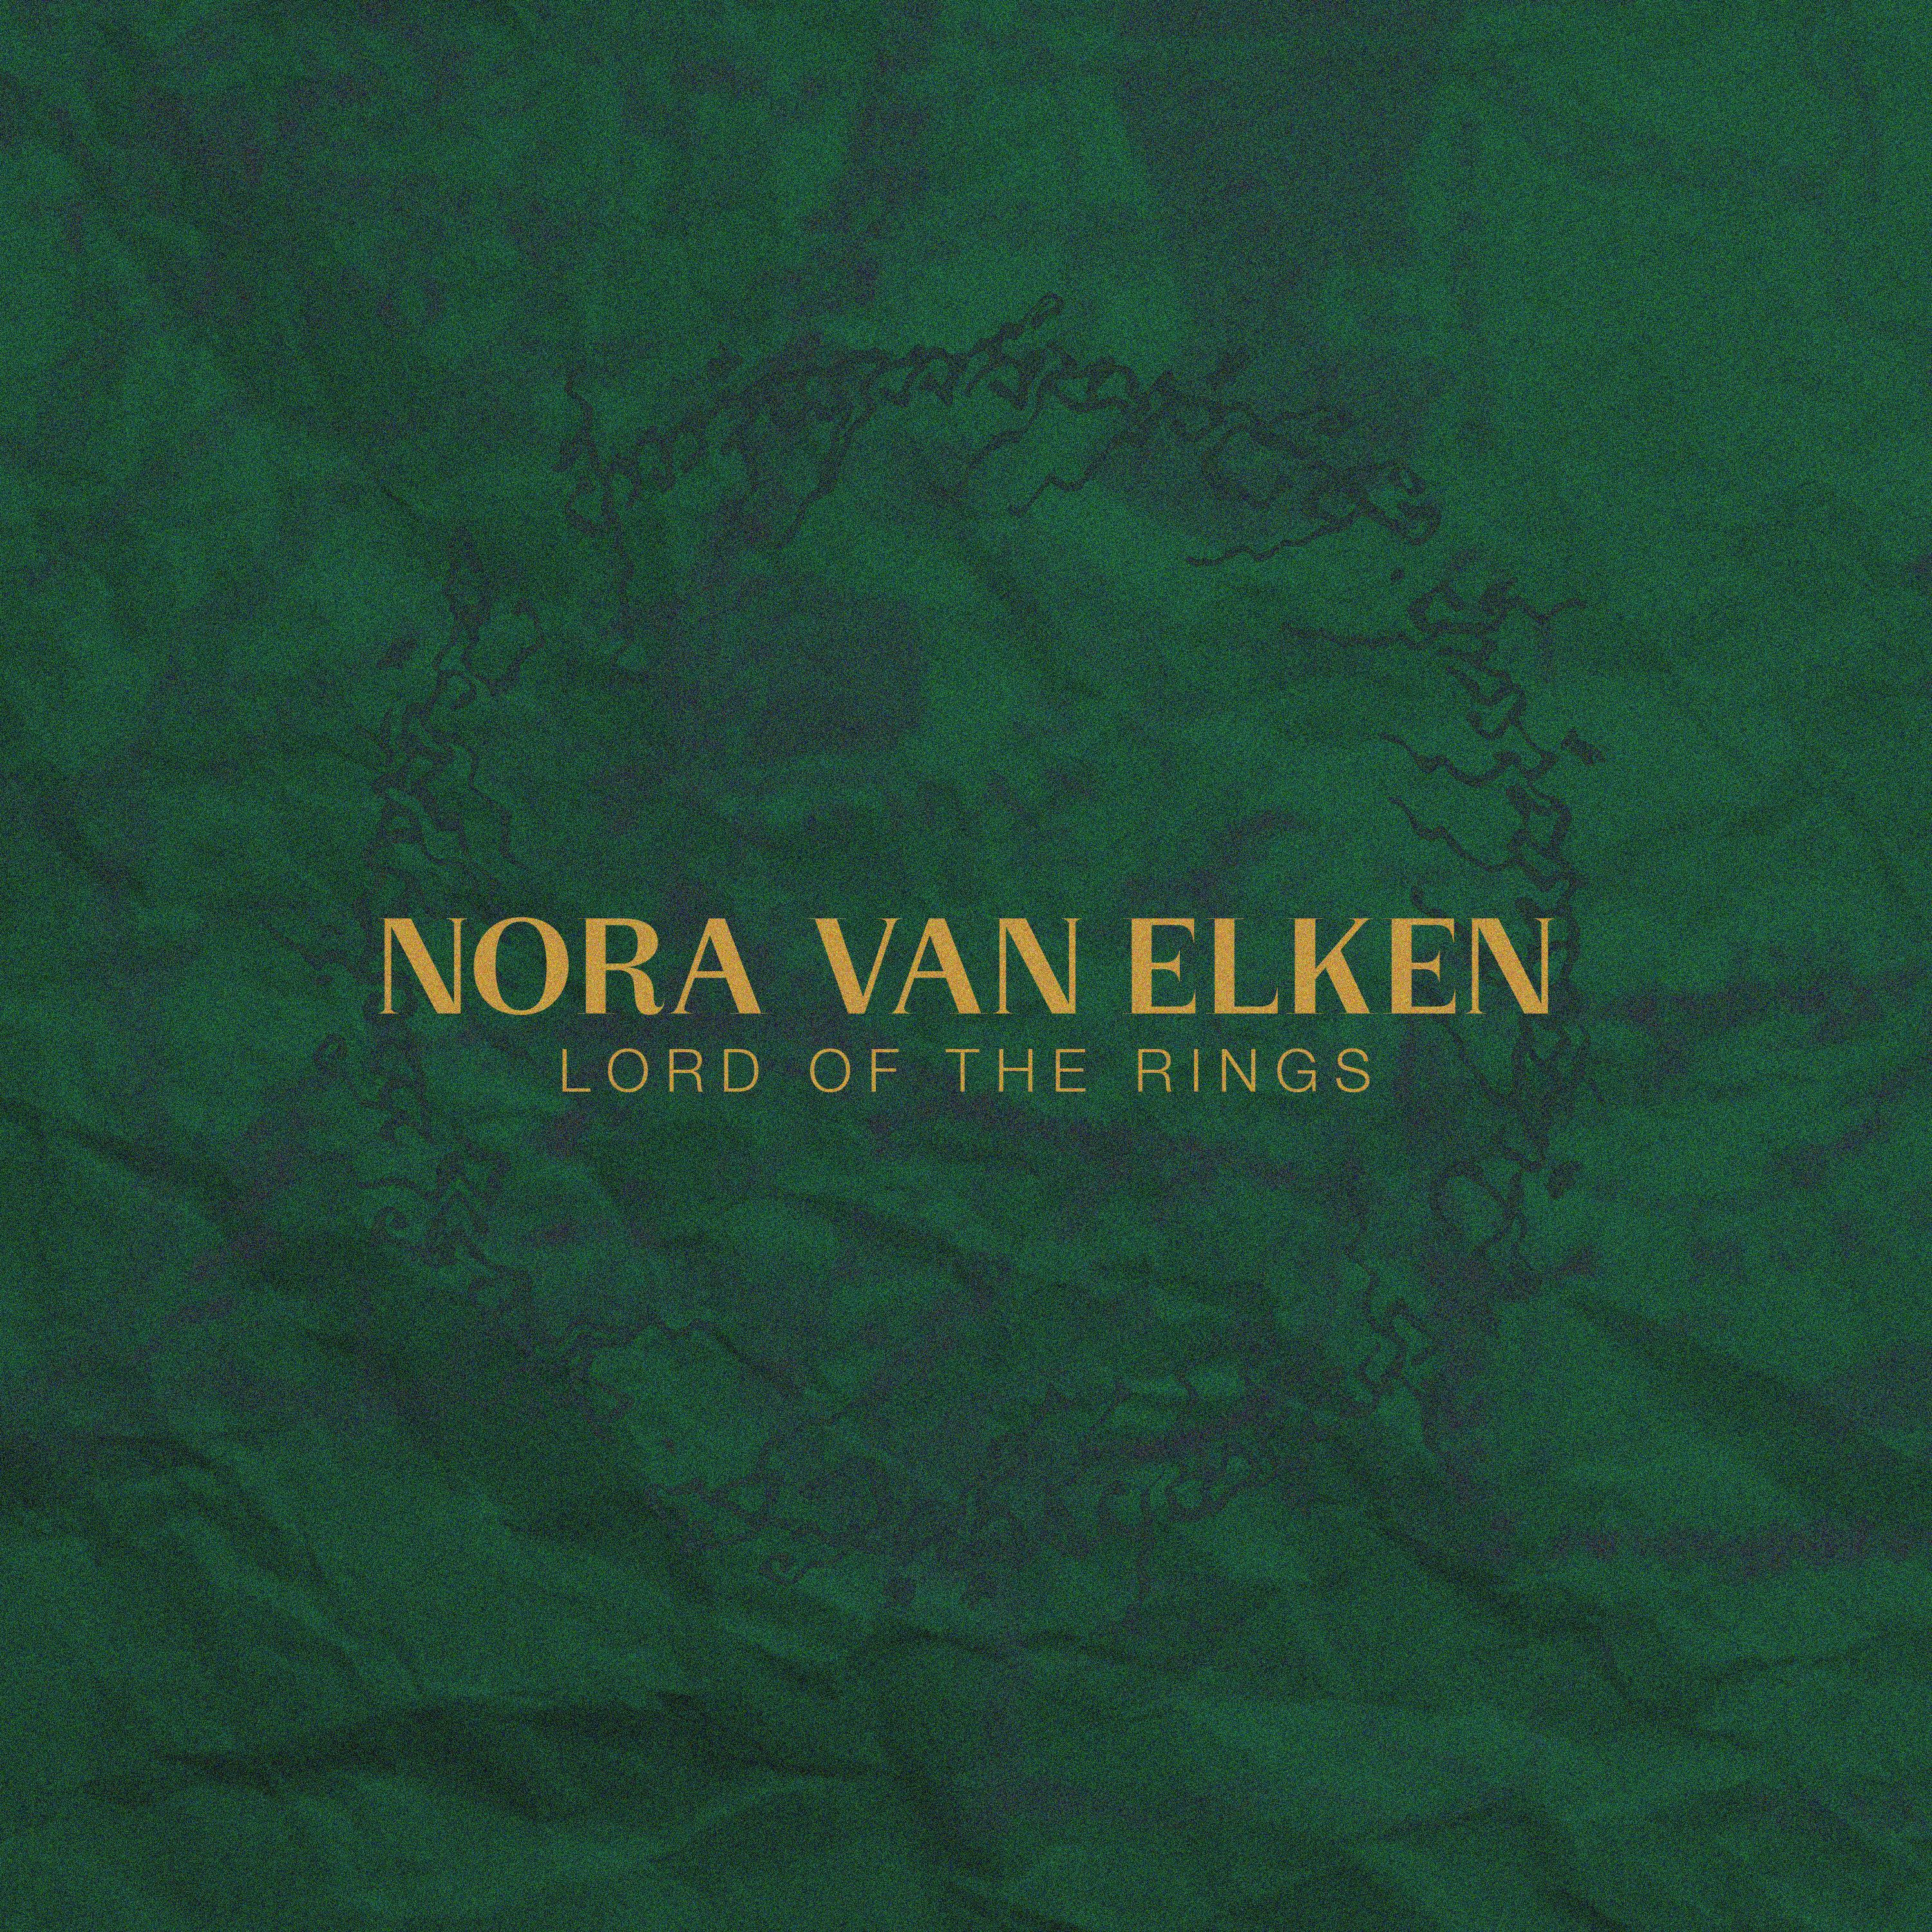 Nora van Elken - Rohan